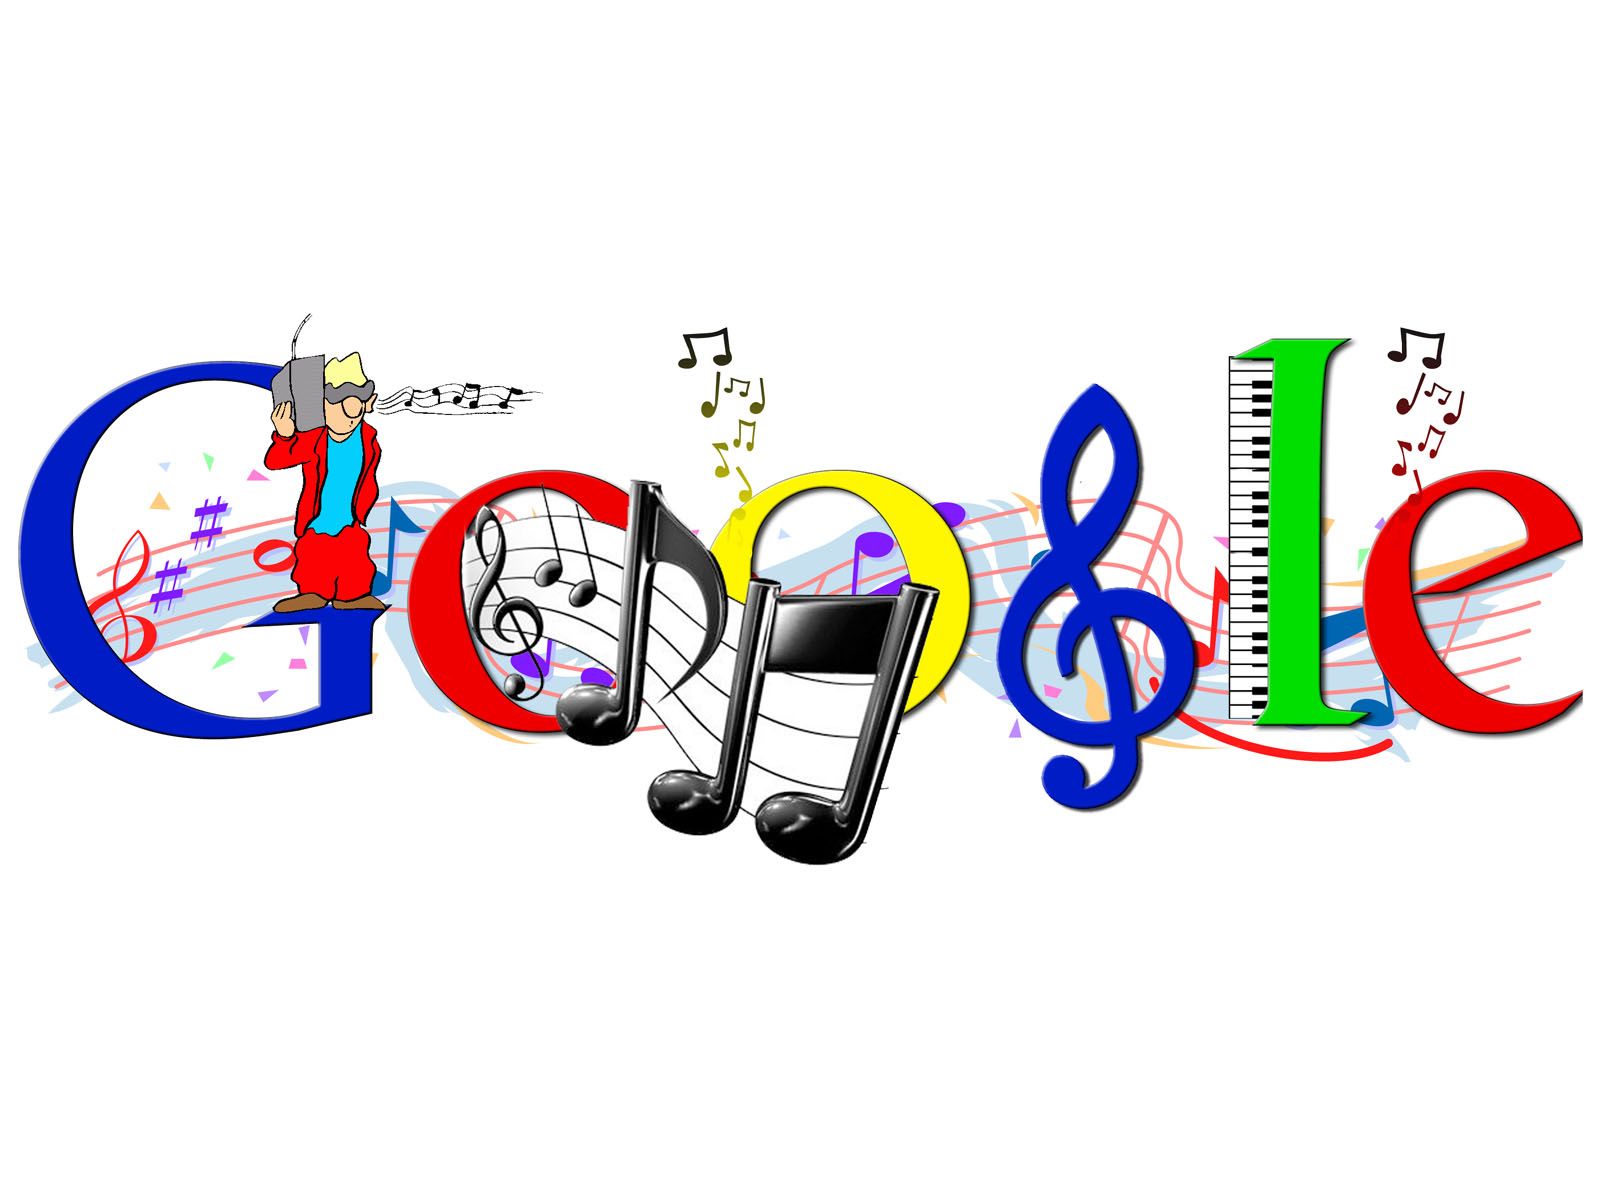 Free download Google Music Logo Wallpaper iBackgroundWallpaper